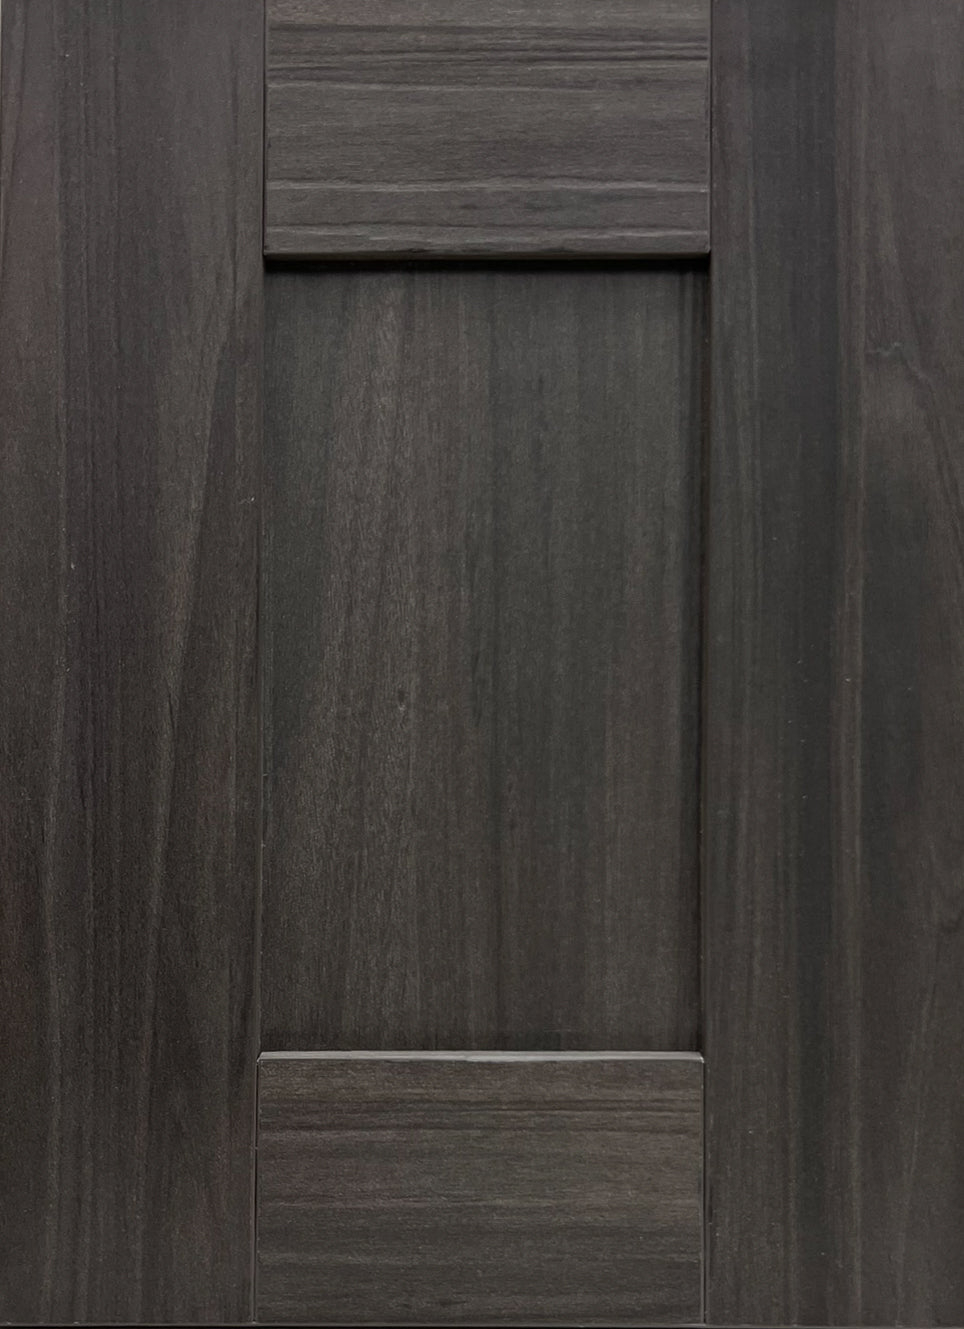 XL Custom Stain Grade Cabinet Door